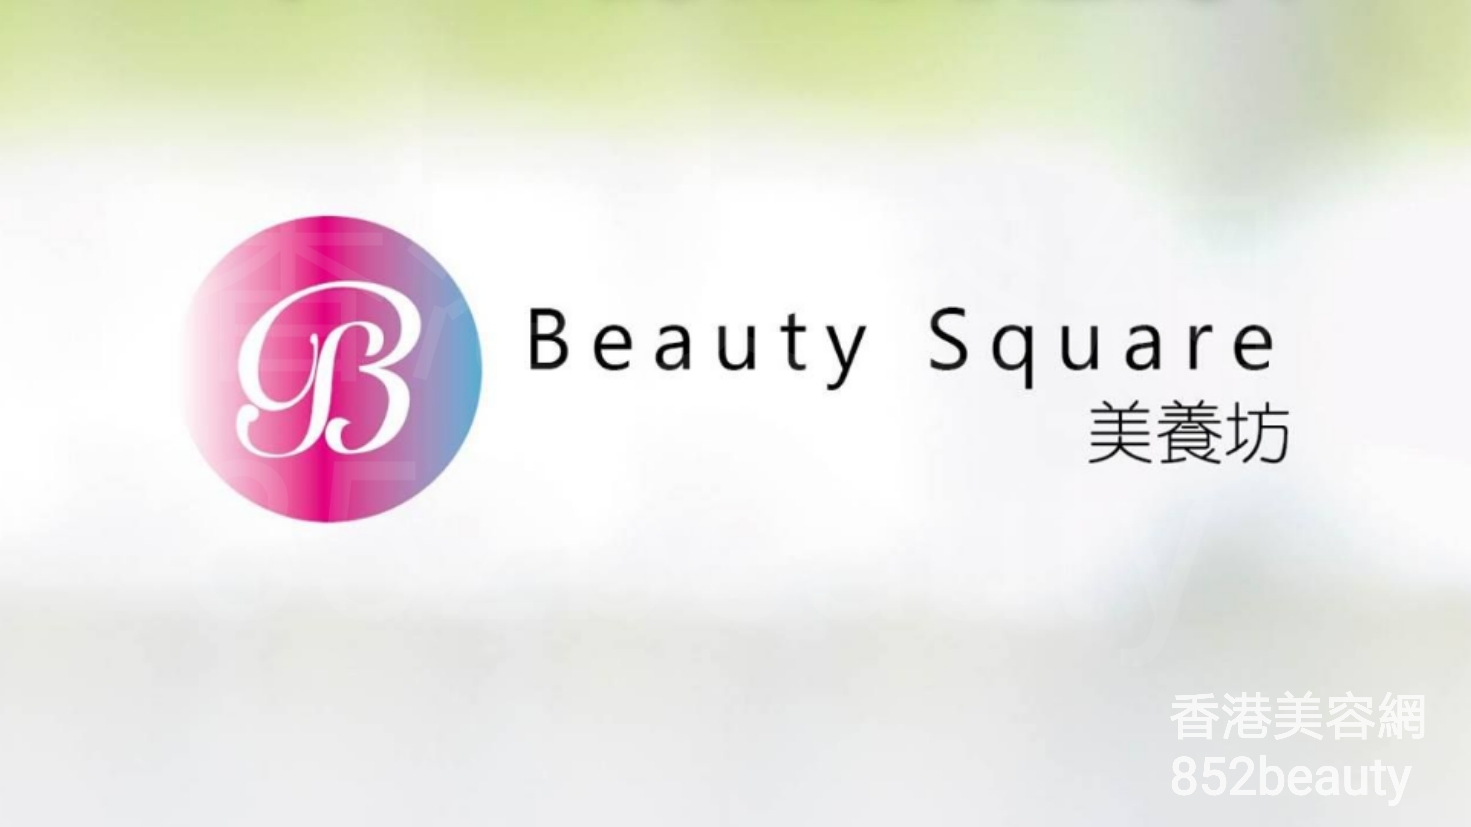 香港美容網 Hong Kong Beauty Salon 美容院 / 美容師: 美養坊 Beauty Square (光榮結業)